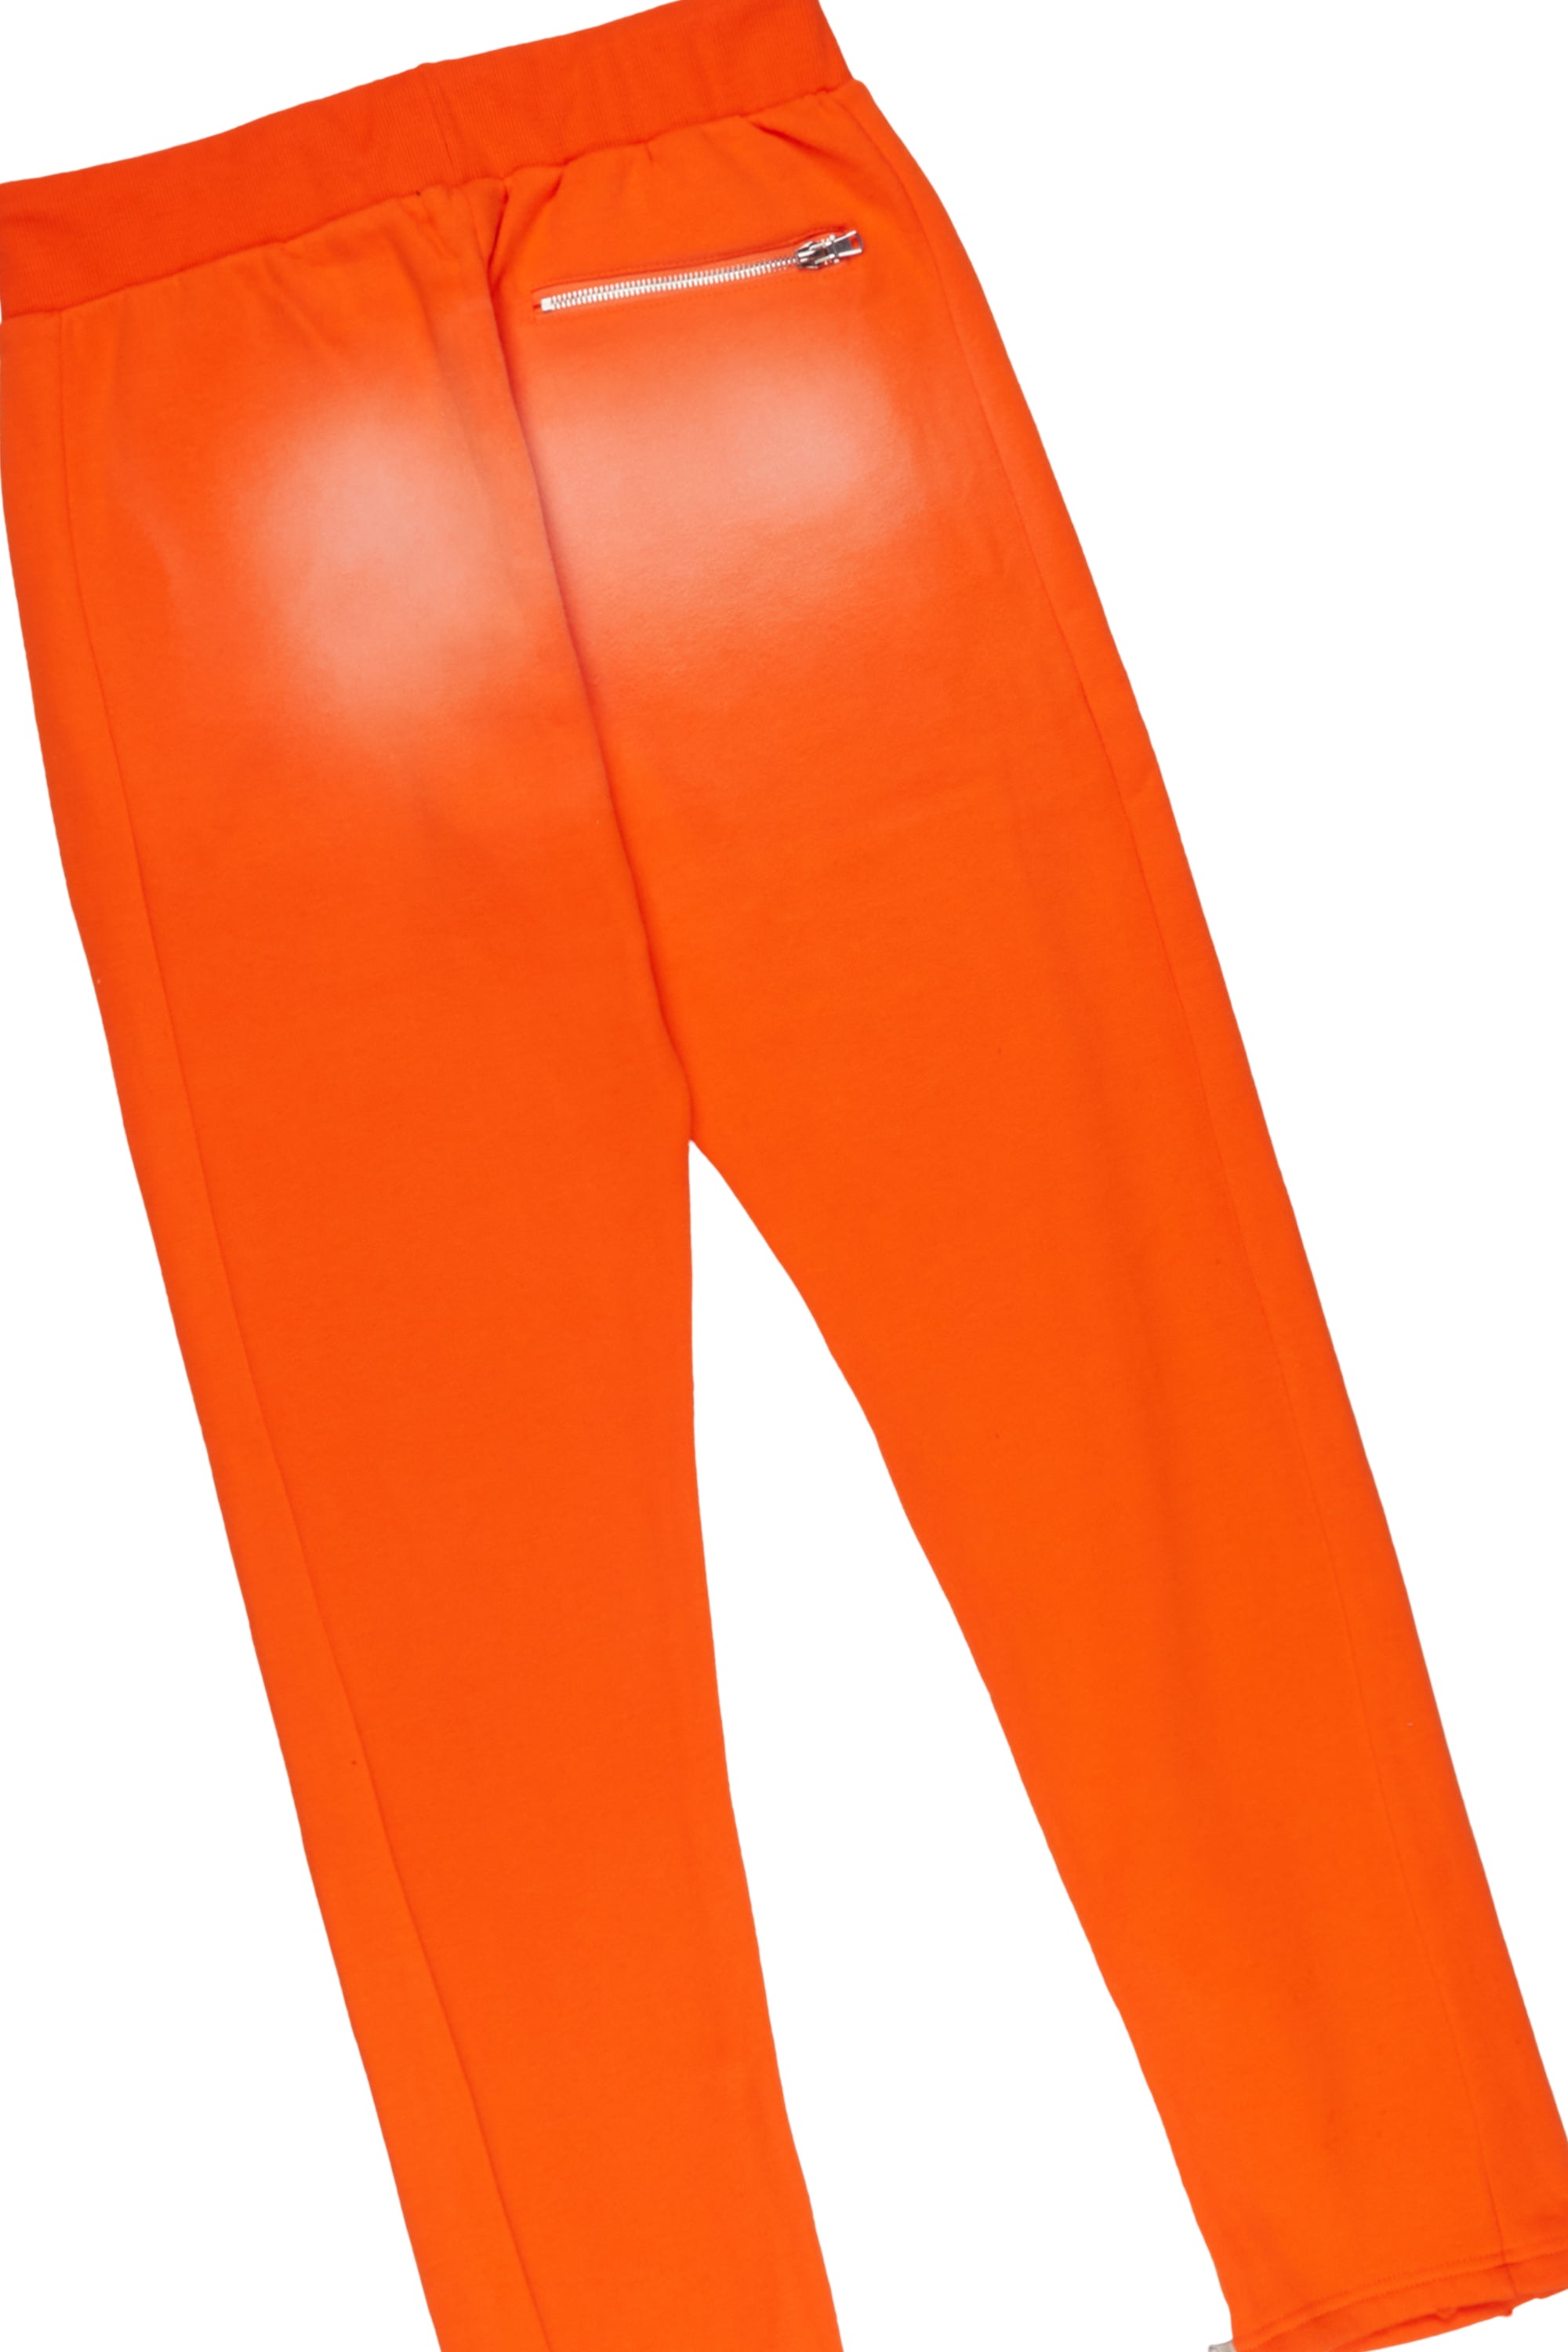 Rockstar Art Dist. Orange Hoodie Slim Fit Pant Set